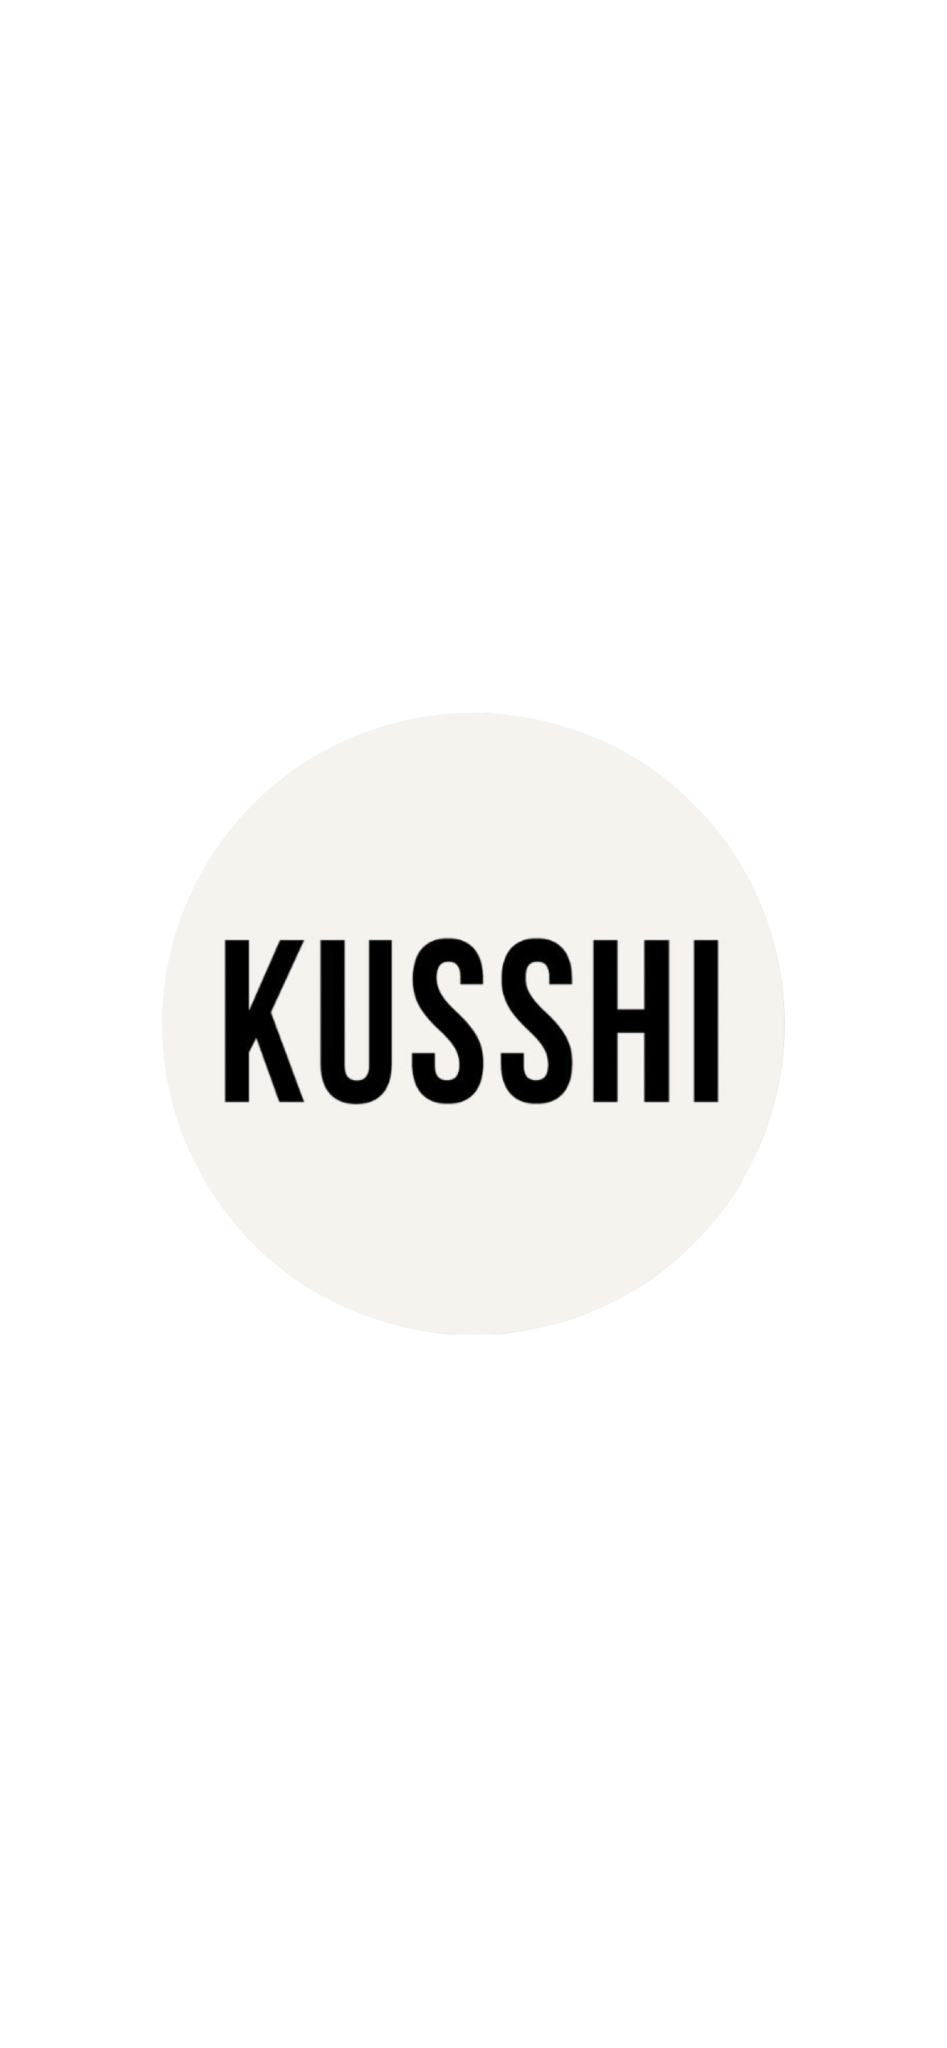 KUSSHI